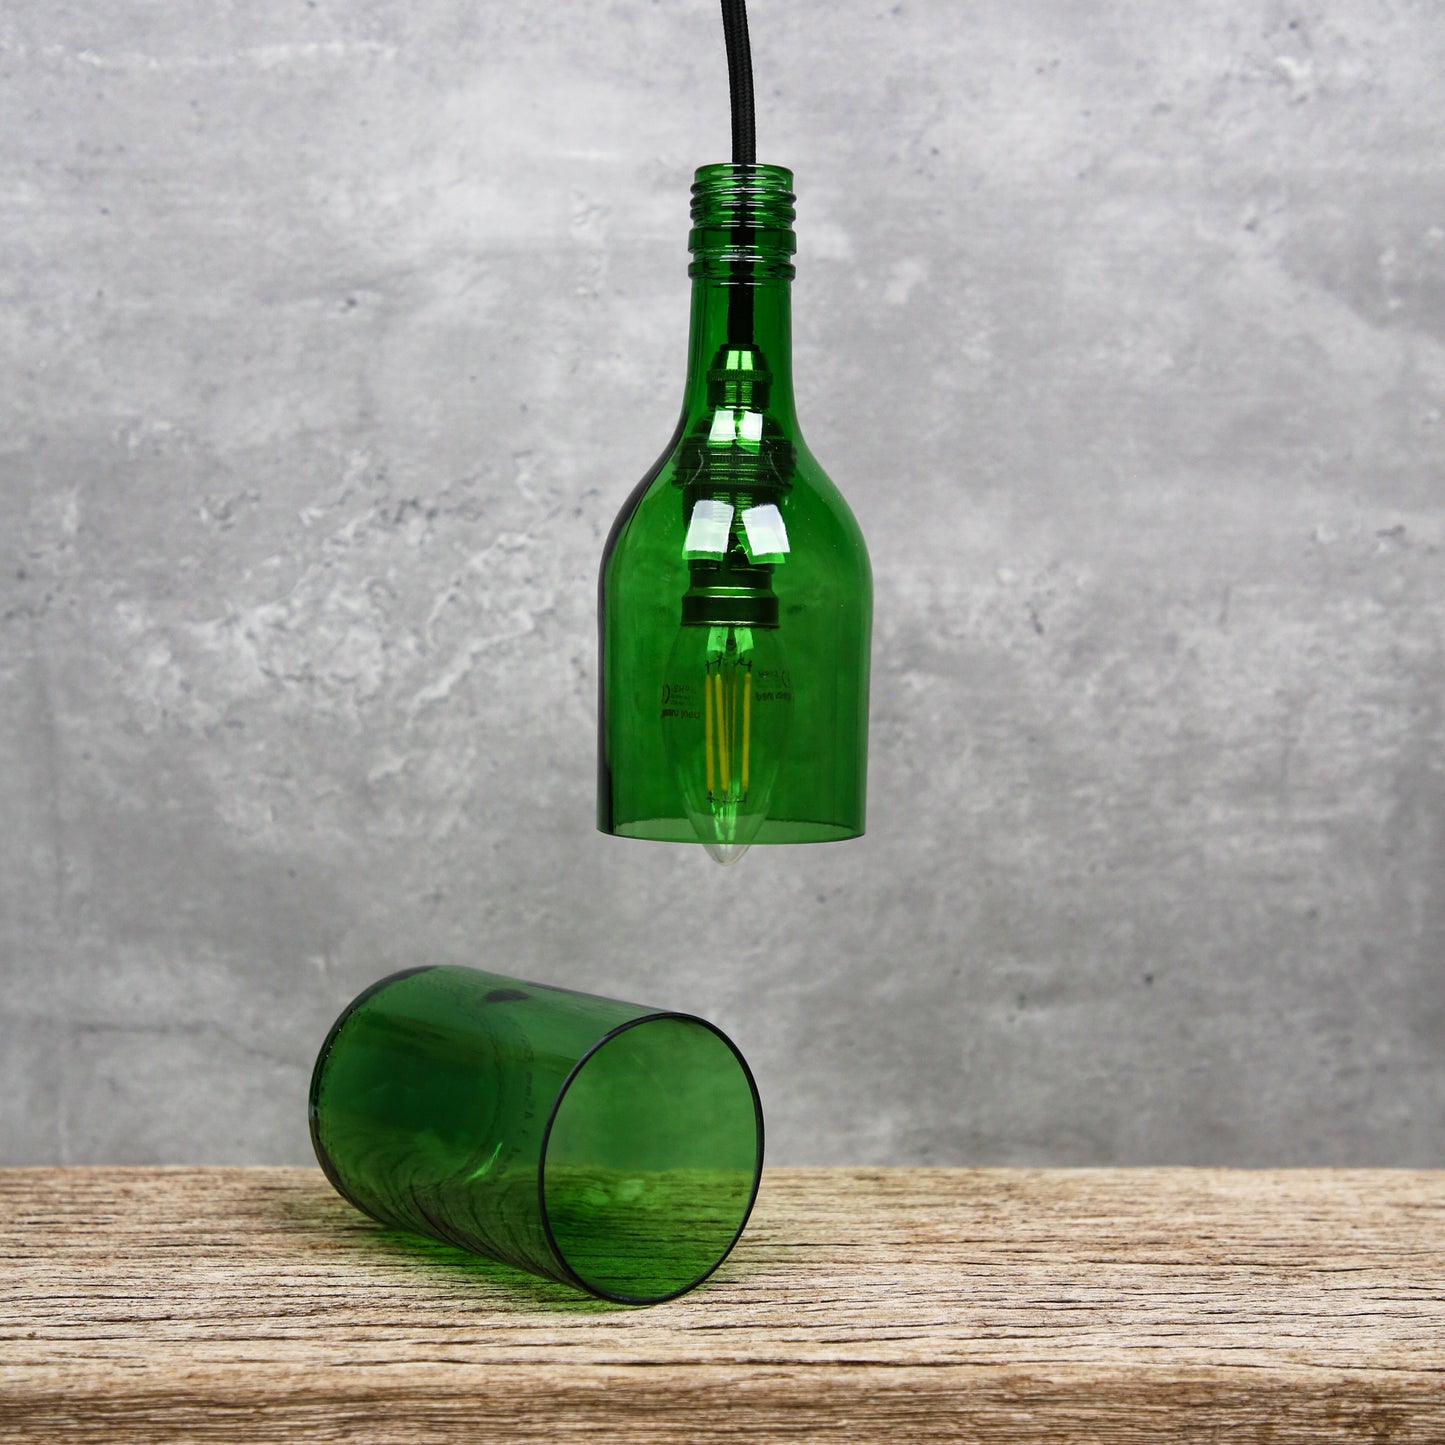 Upcycled Green Bottle Light.